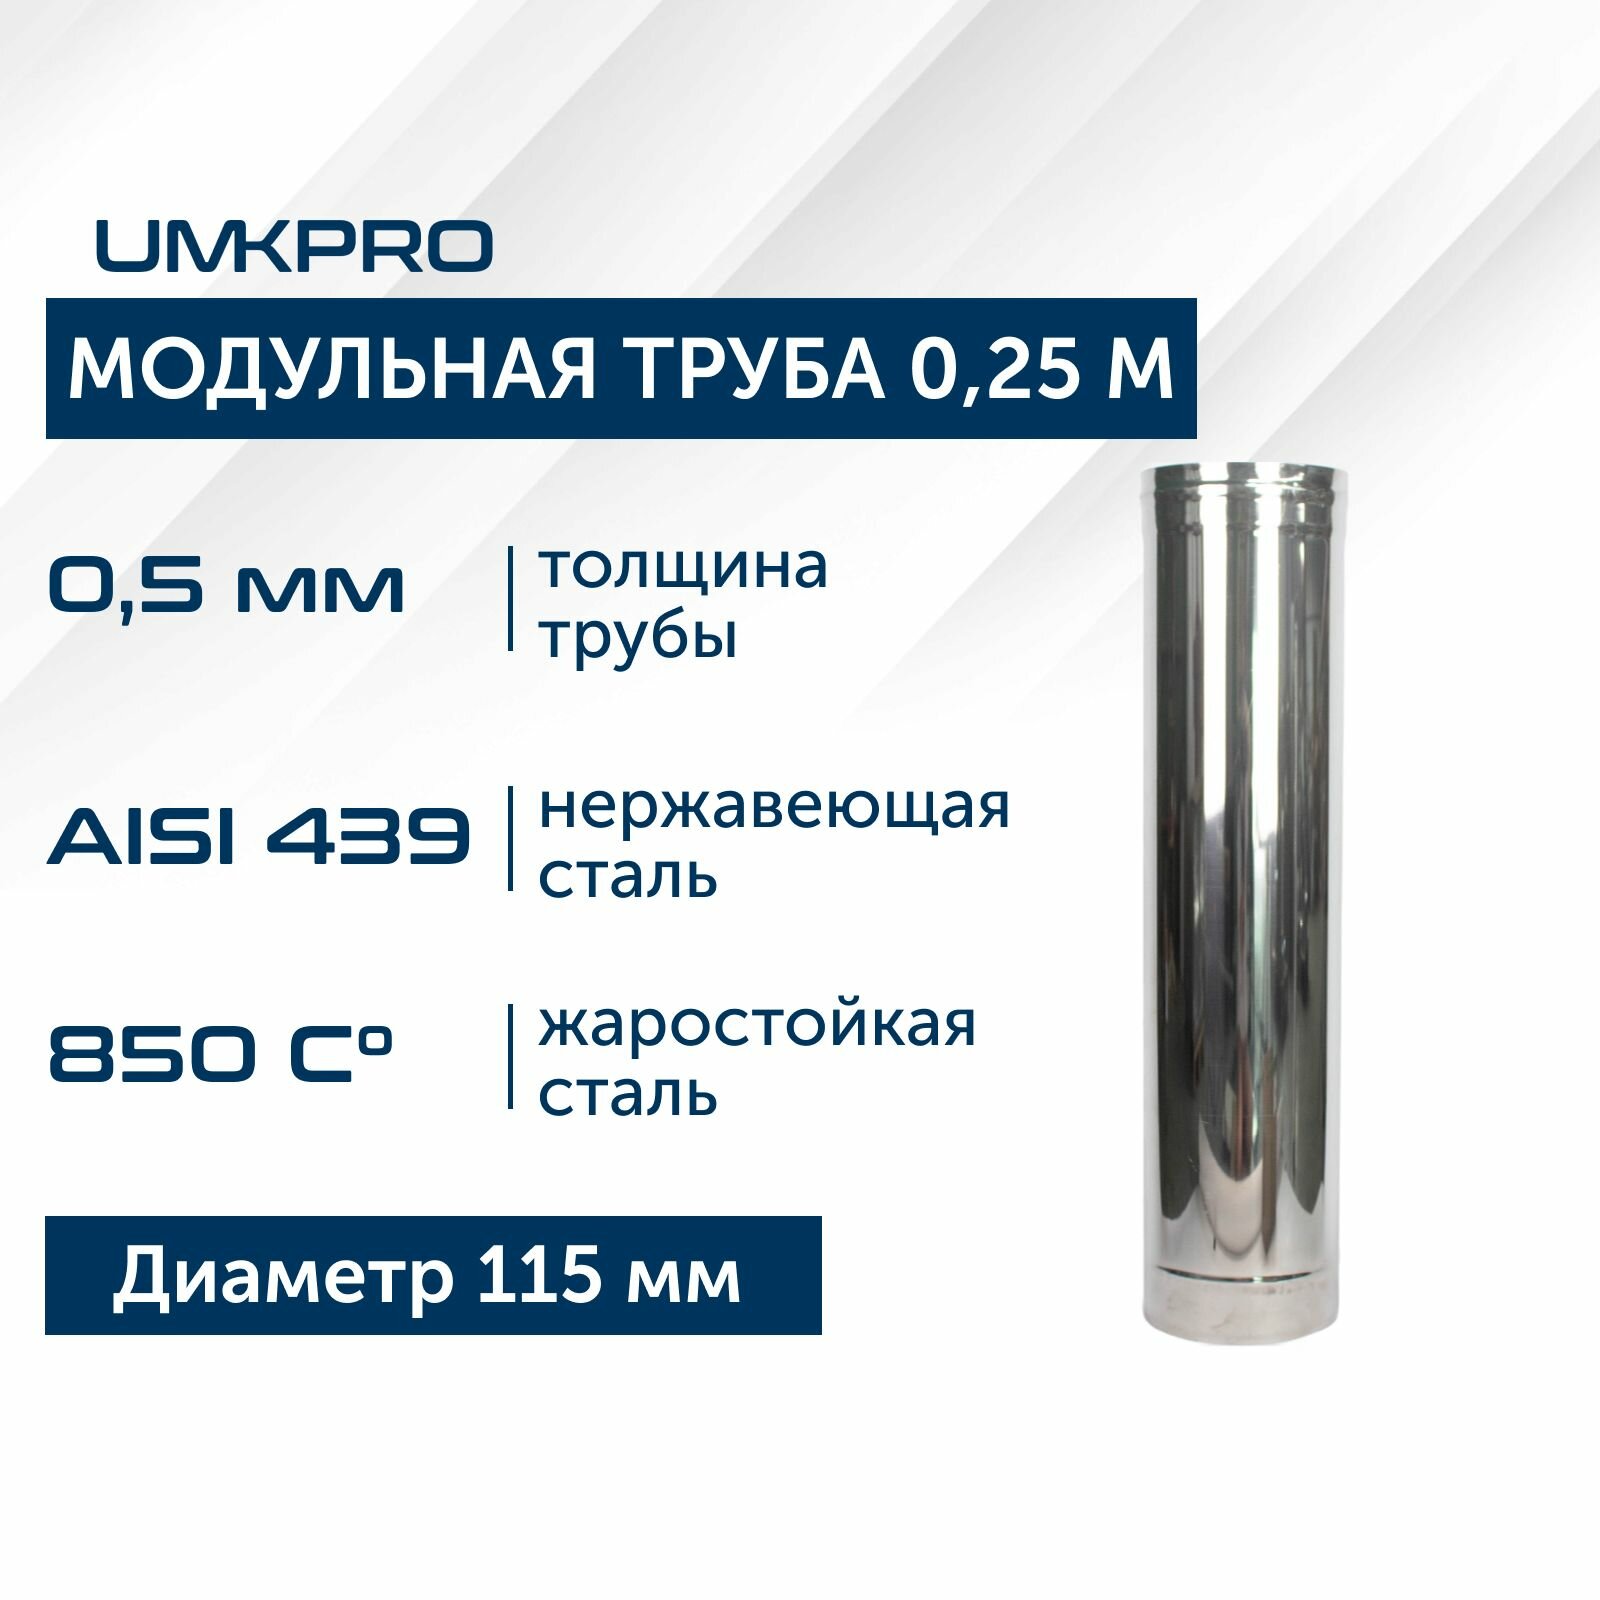 Труба модульная для дымохода 025 м UMKPRO D 120 AISI 439/05мм